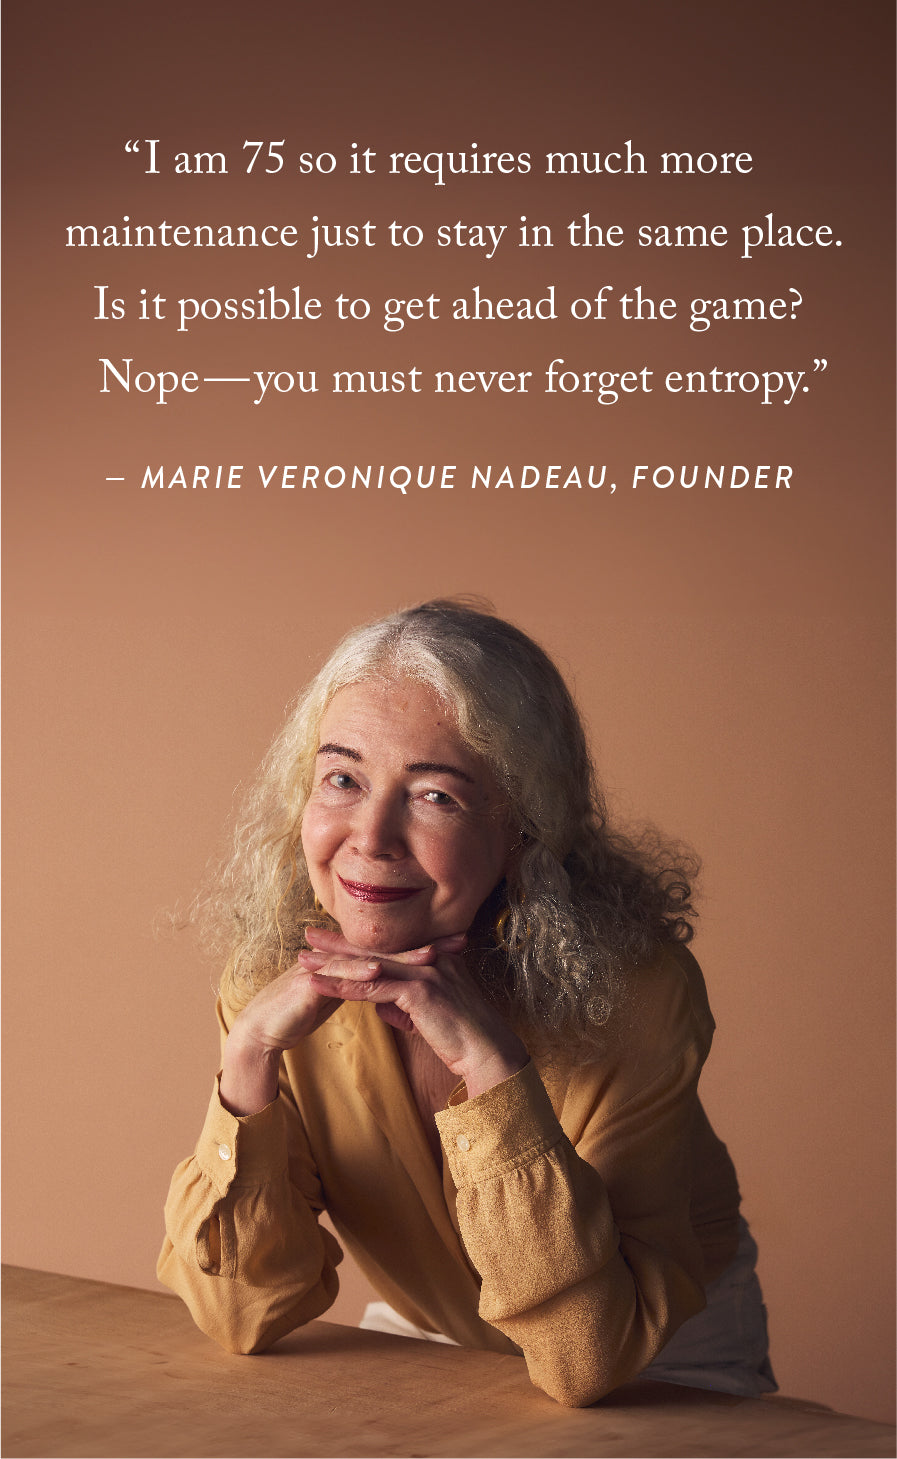 Marie Veronique's Personal Skincare Regimen